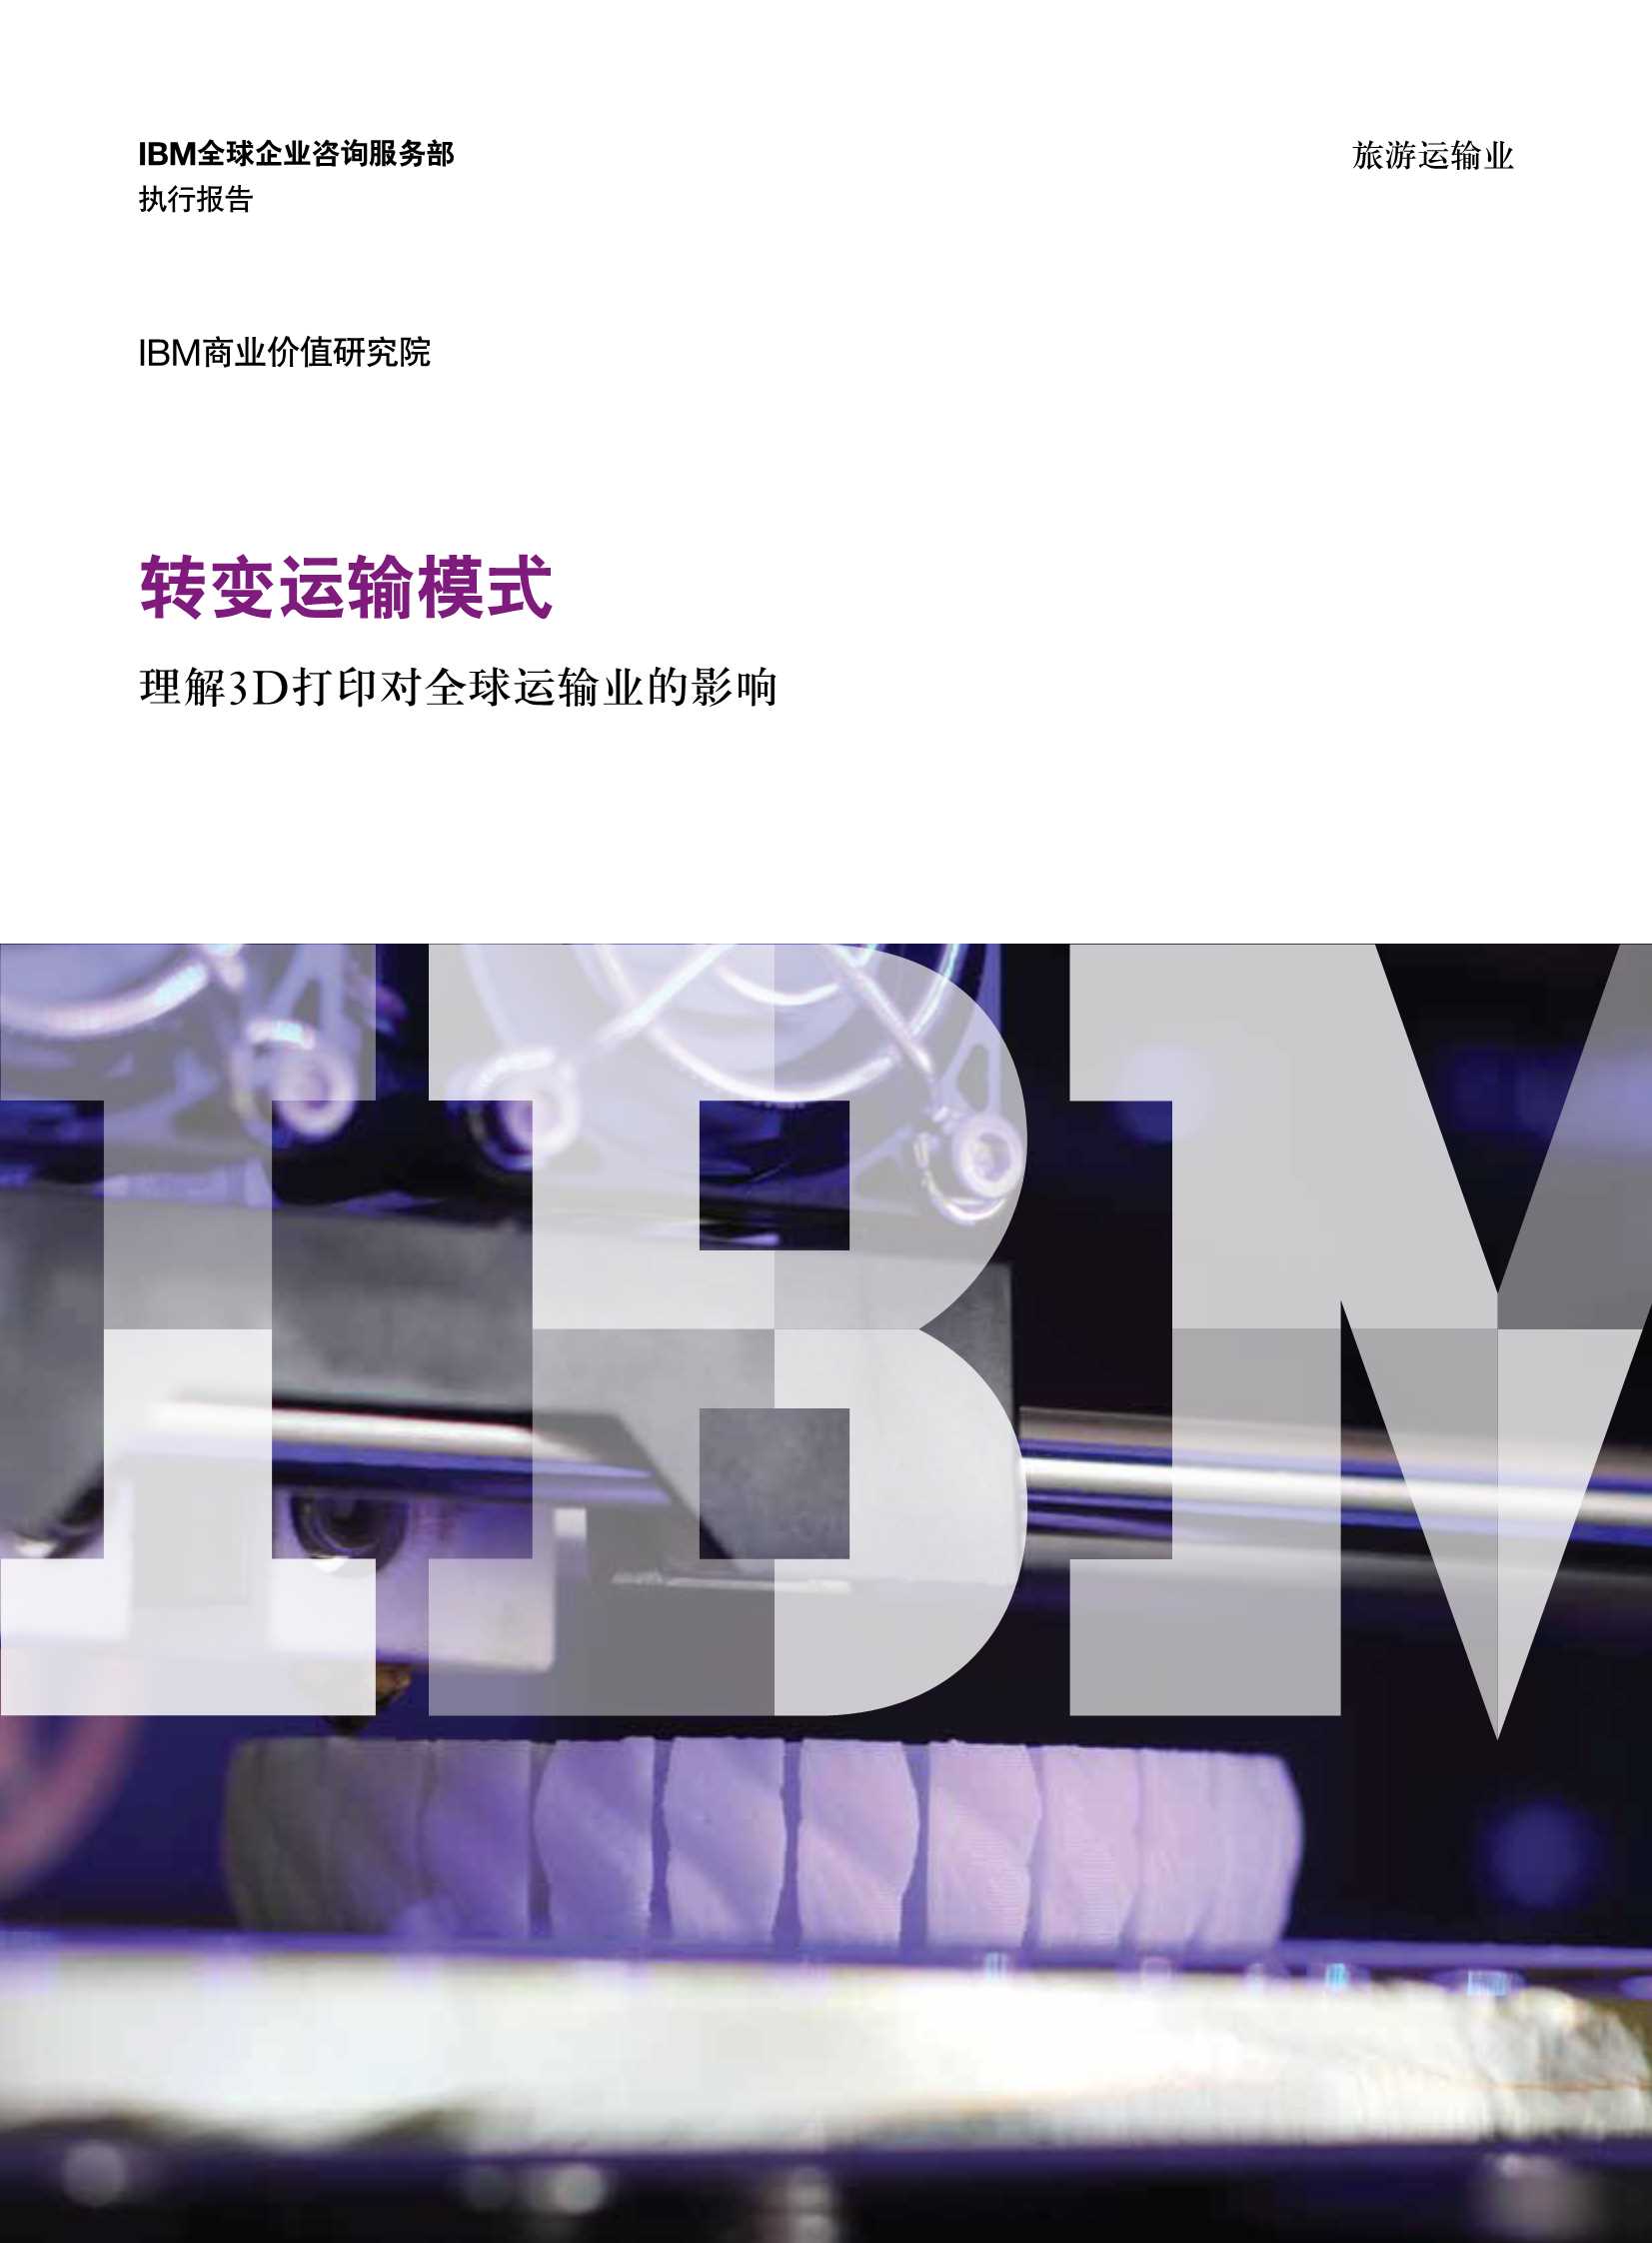 IBM-转变运输模式：理解3D打印对全球运输业的影响-2021.05-14页